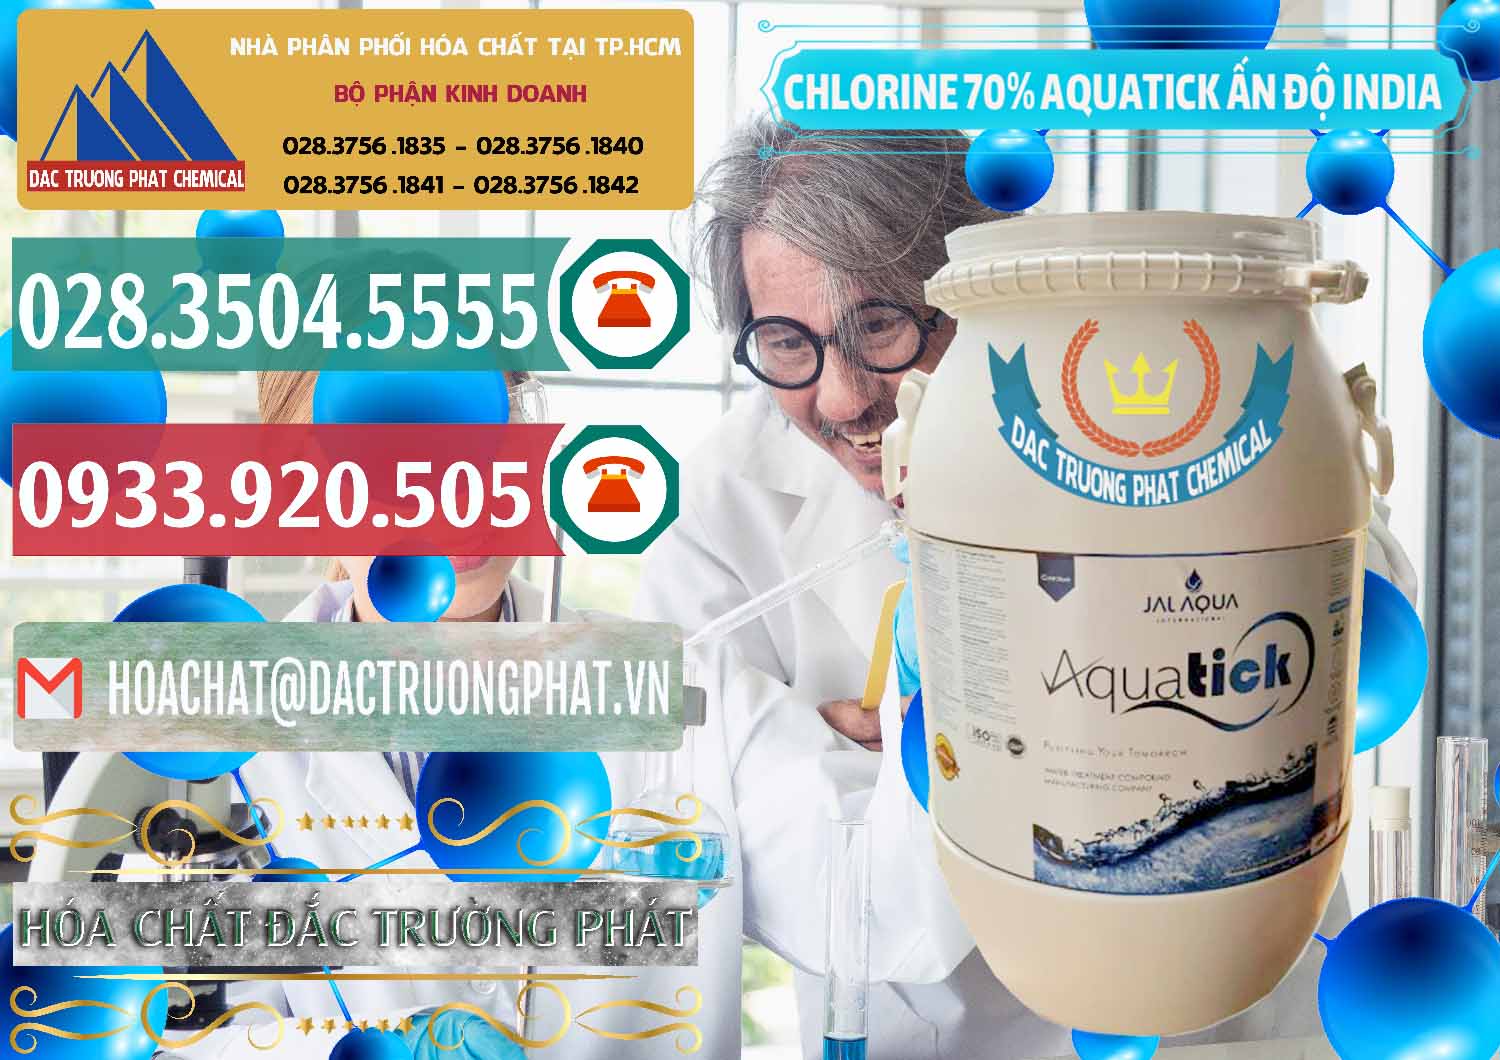 Cty phân phối - bán Chlorine – Clorin 70% Aquatick Jal Aqua Ấn Độ India - 0215 - Chuyên cung cấp _ kinh doanh hóa chất tại TP.HCM - muabanhoachat.vn